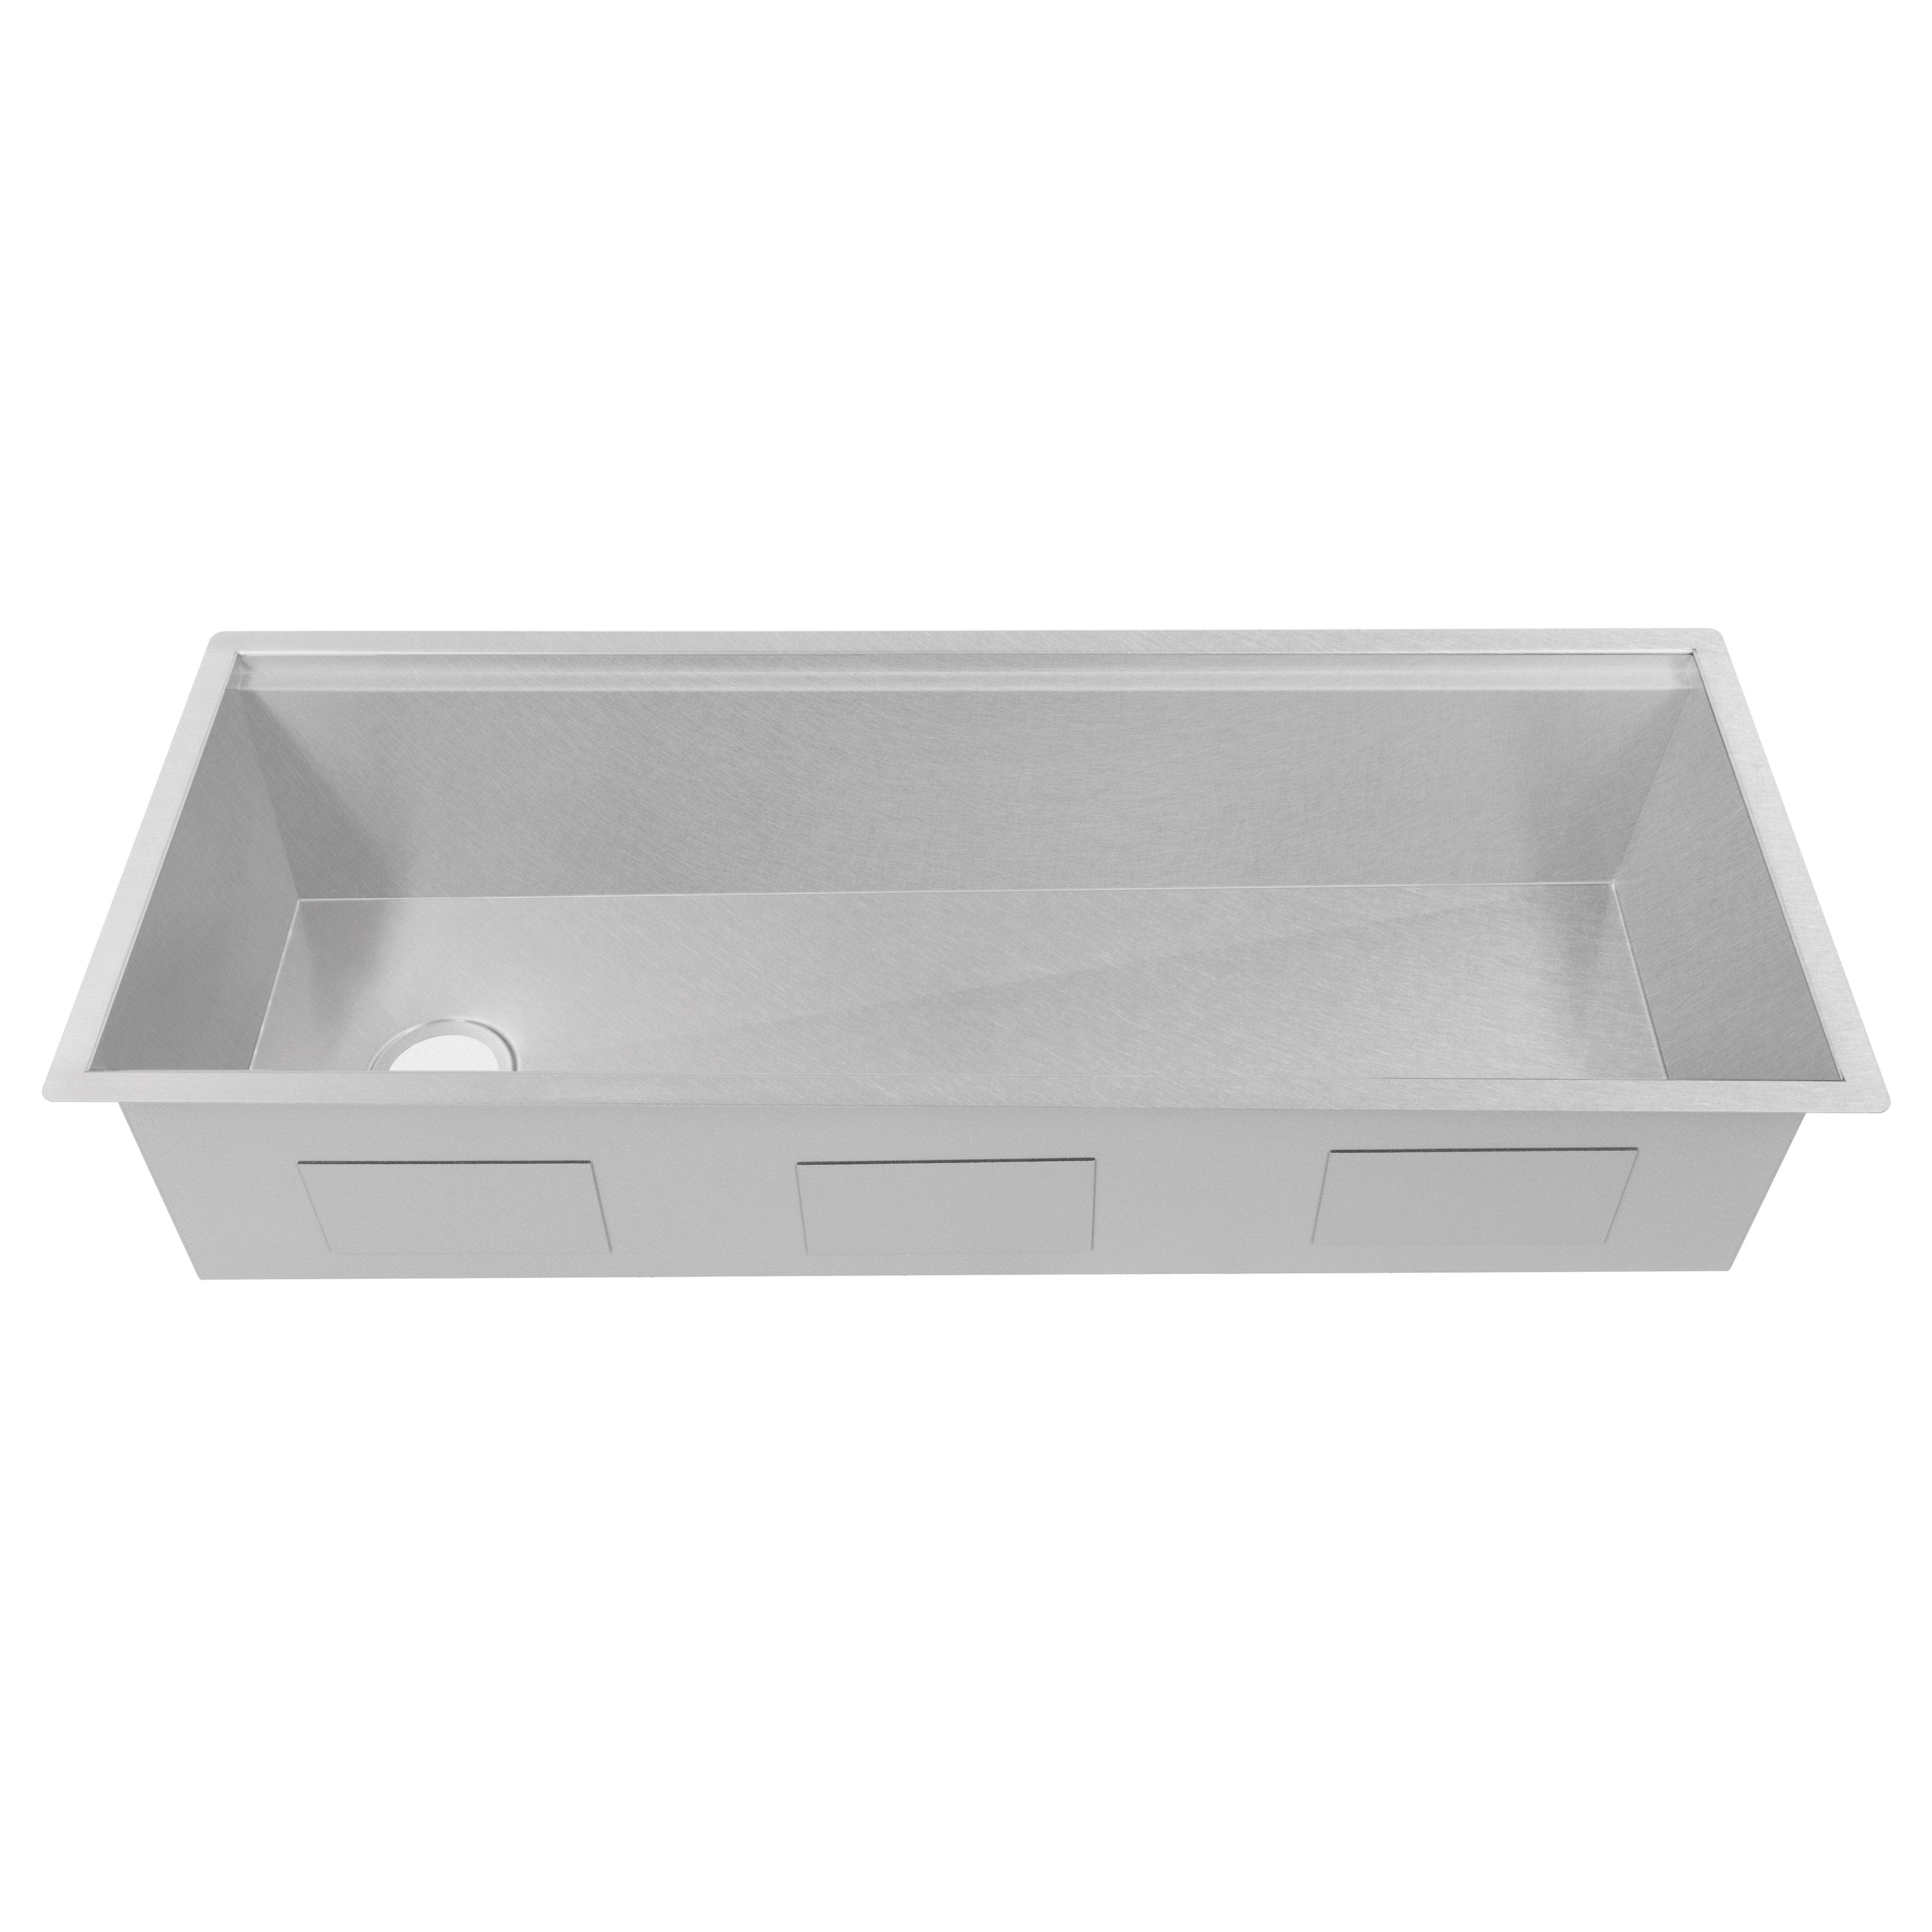 ZLINE Kitchen and Bath, ZLINE Garmisch 43 Inch Undermount Single Bowl Sink with Accessories (SLS-43), SLS-43,